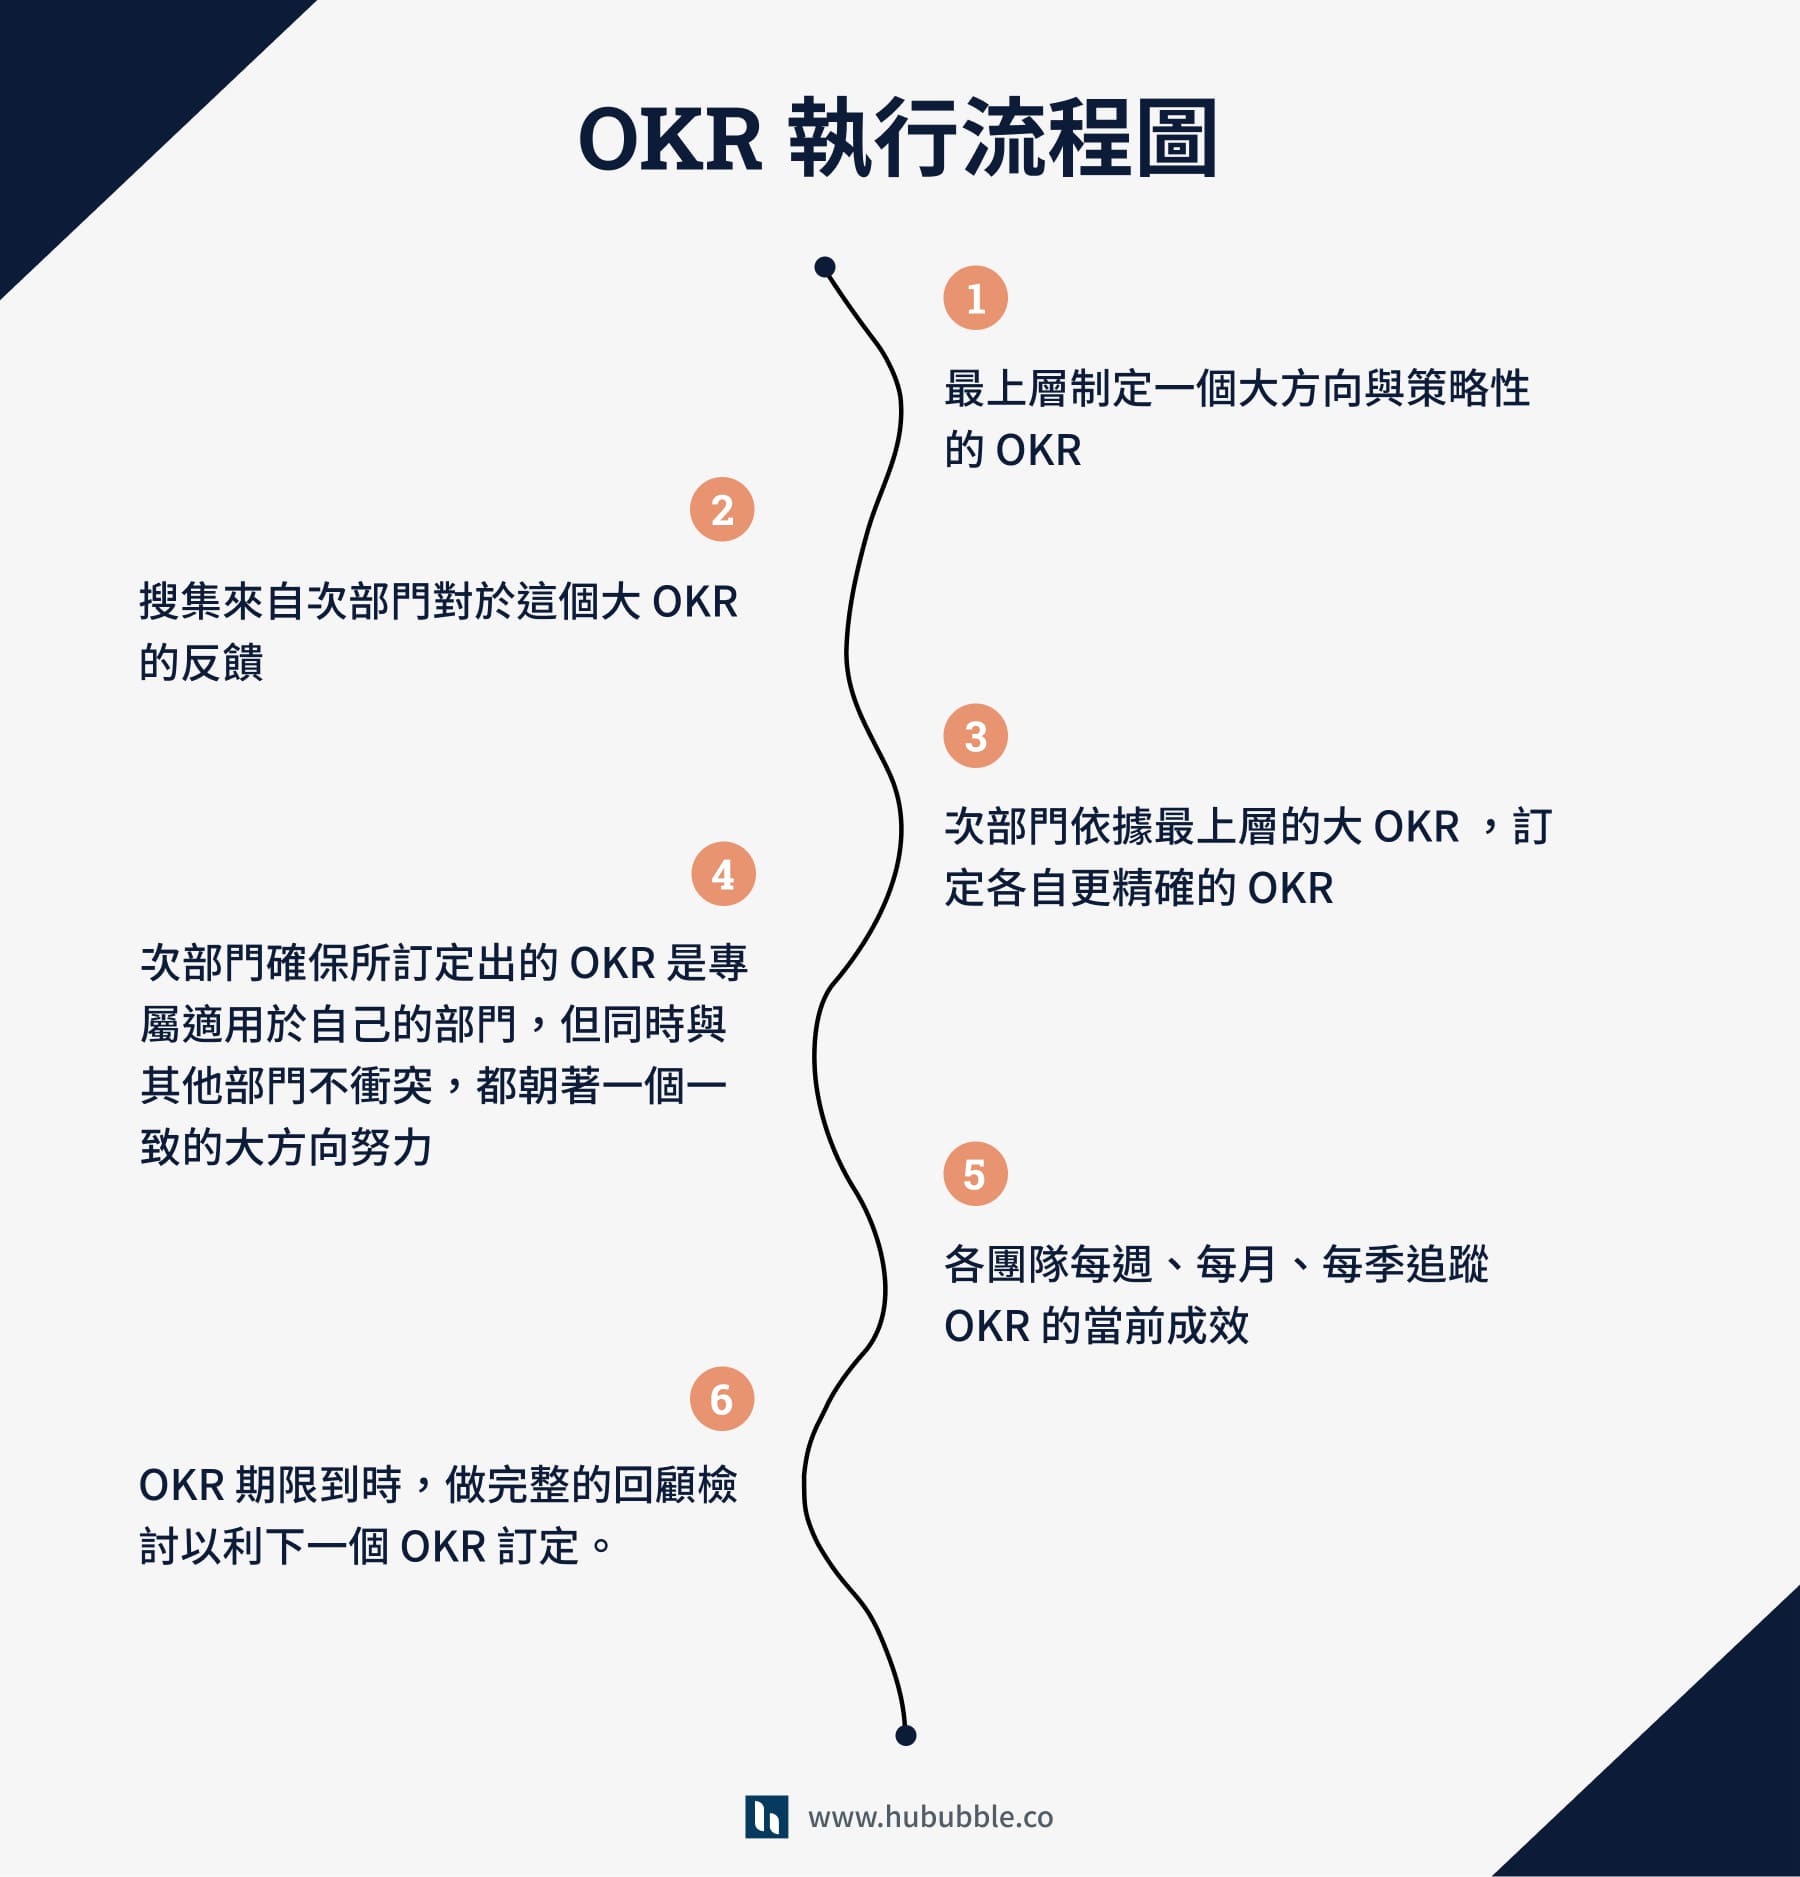 OKR 執行流程圖 